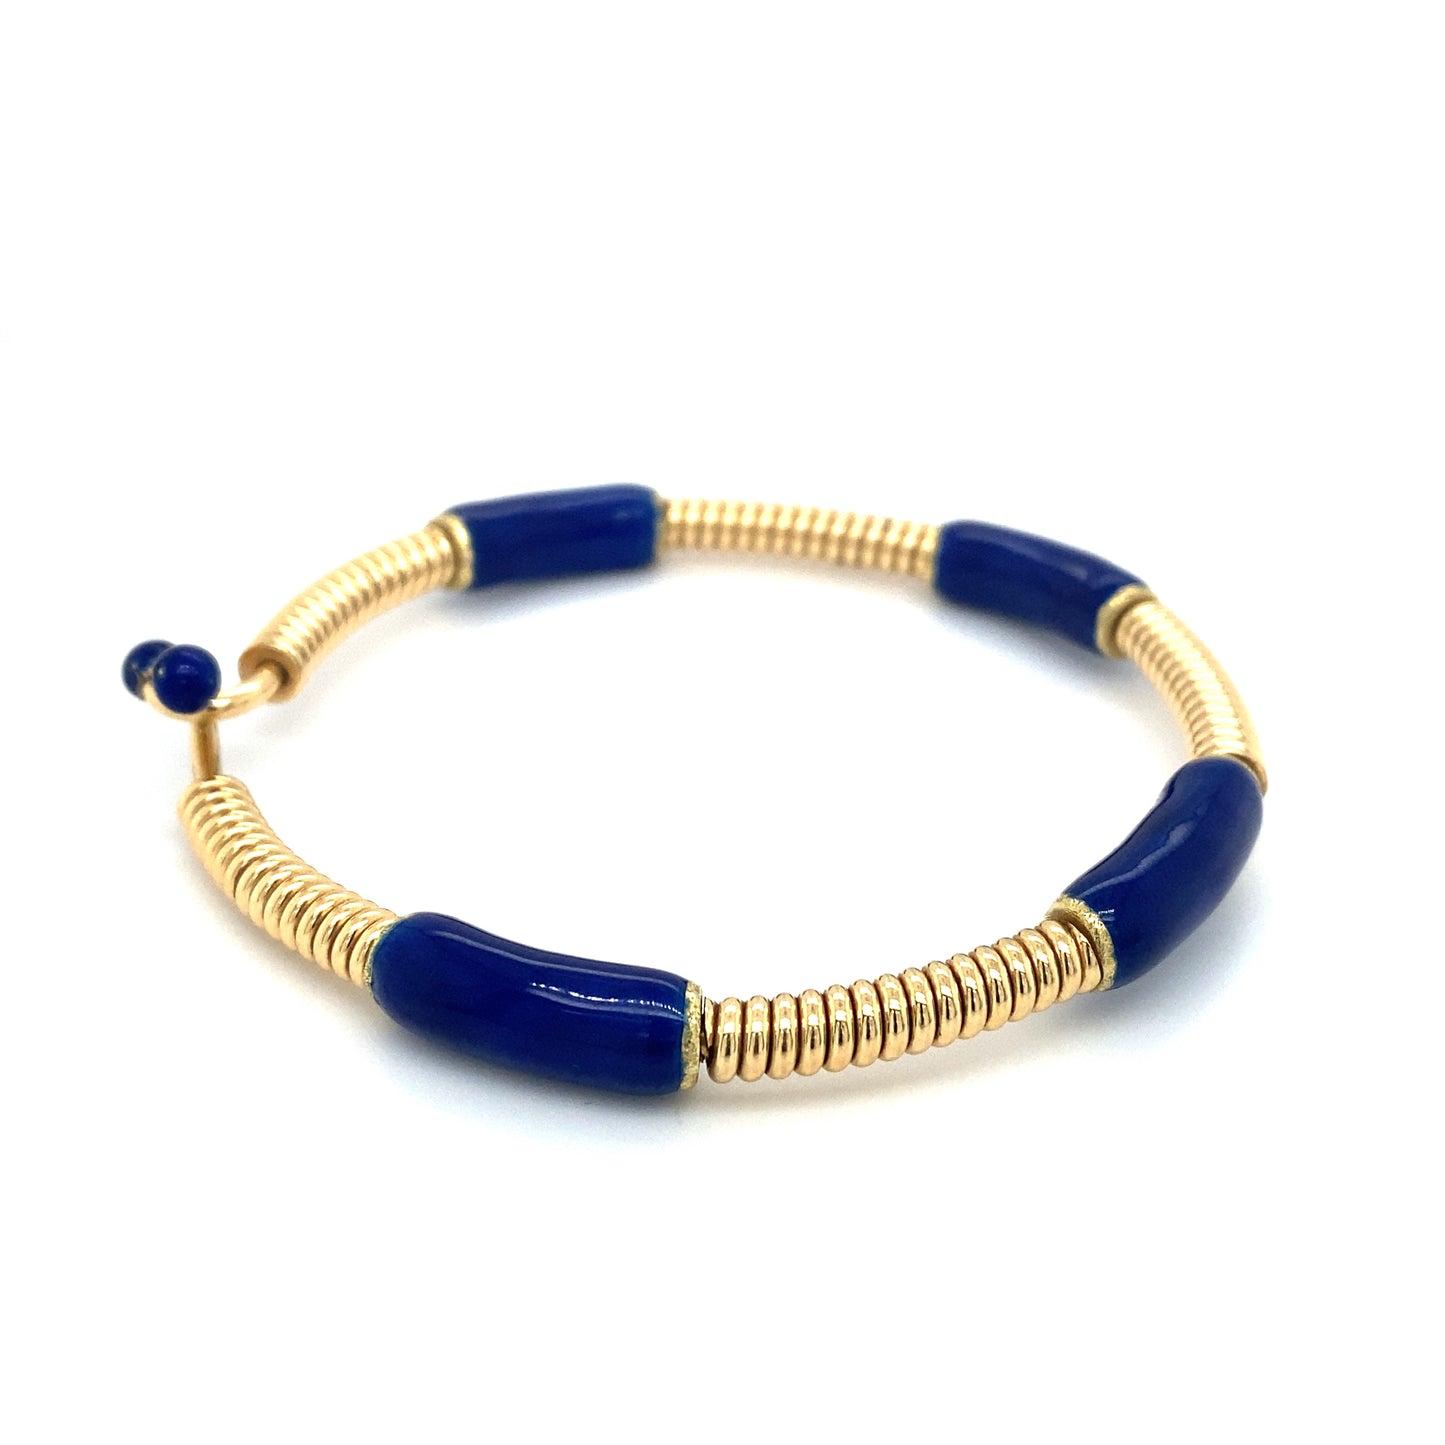 Circa 1980s GUCCI Blue Enamel Twist Bracelet in 18K Gold